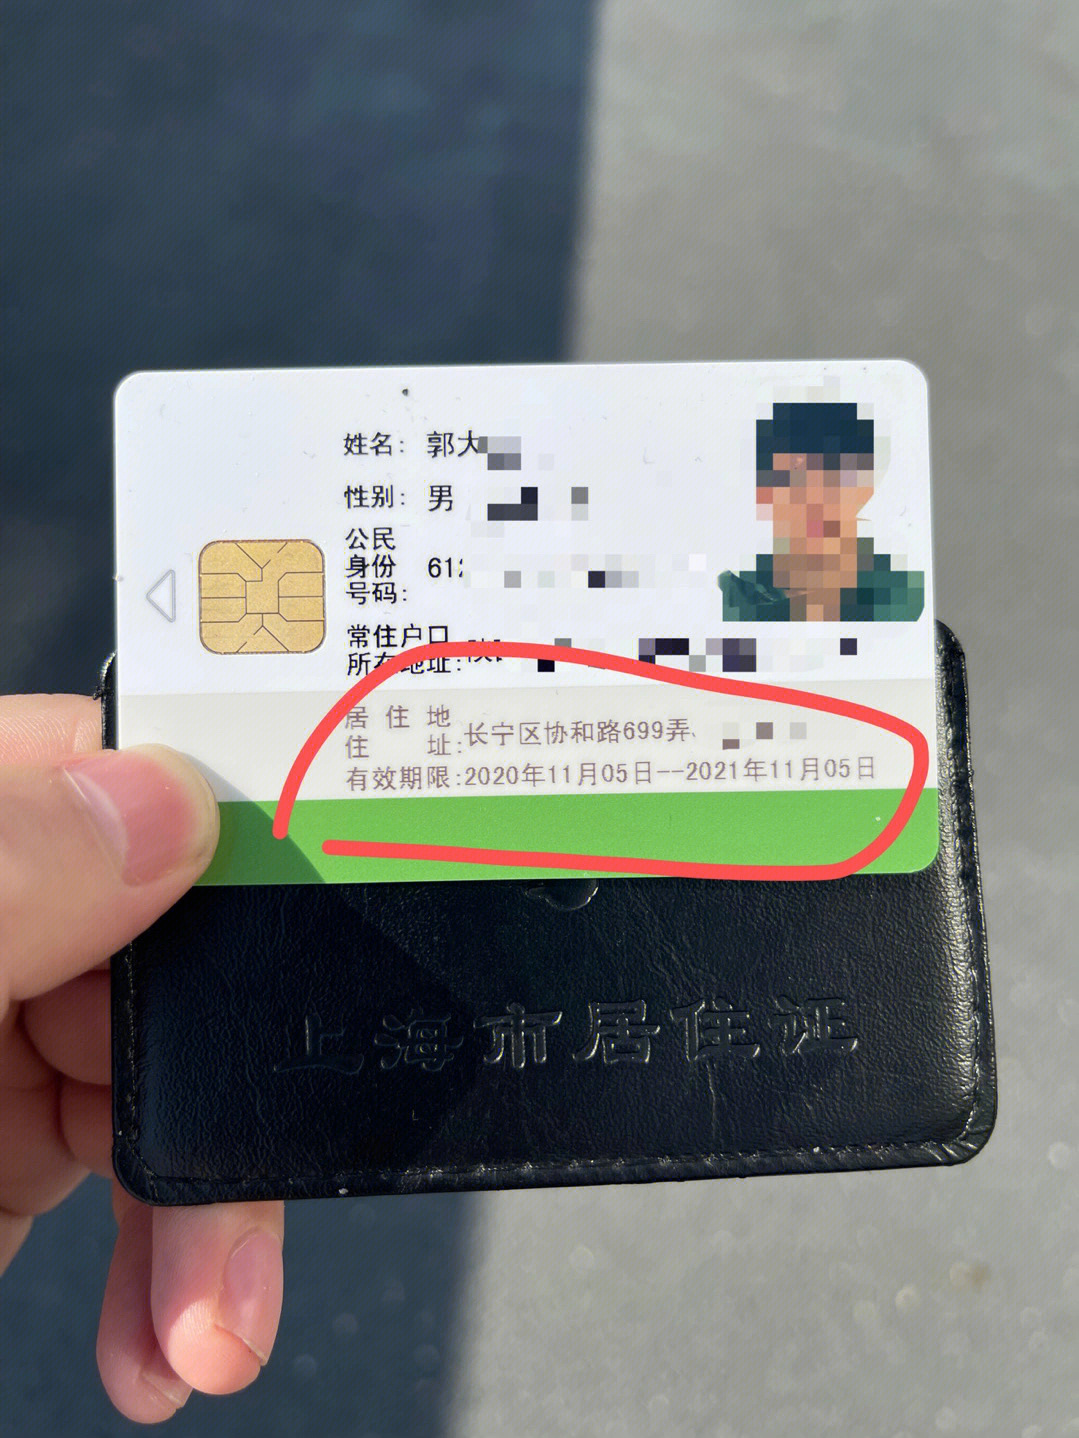 上海居住证有什么用图片